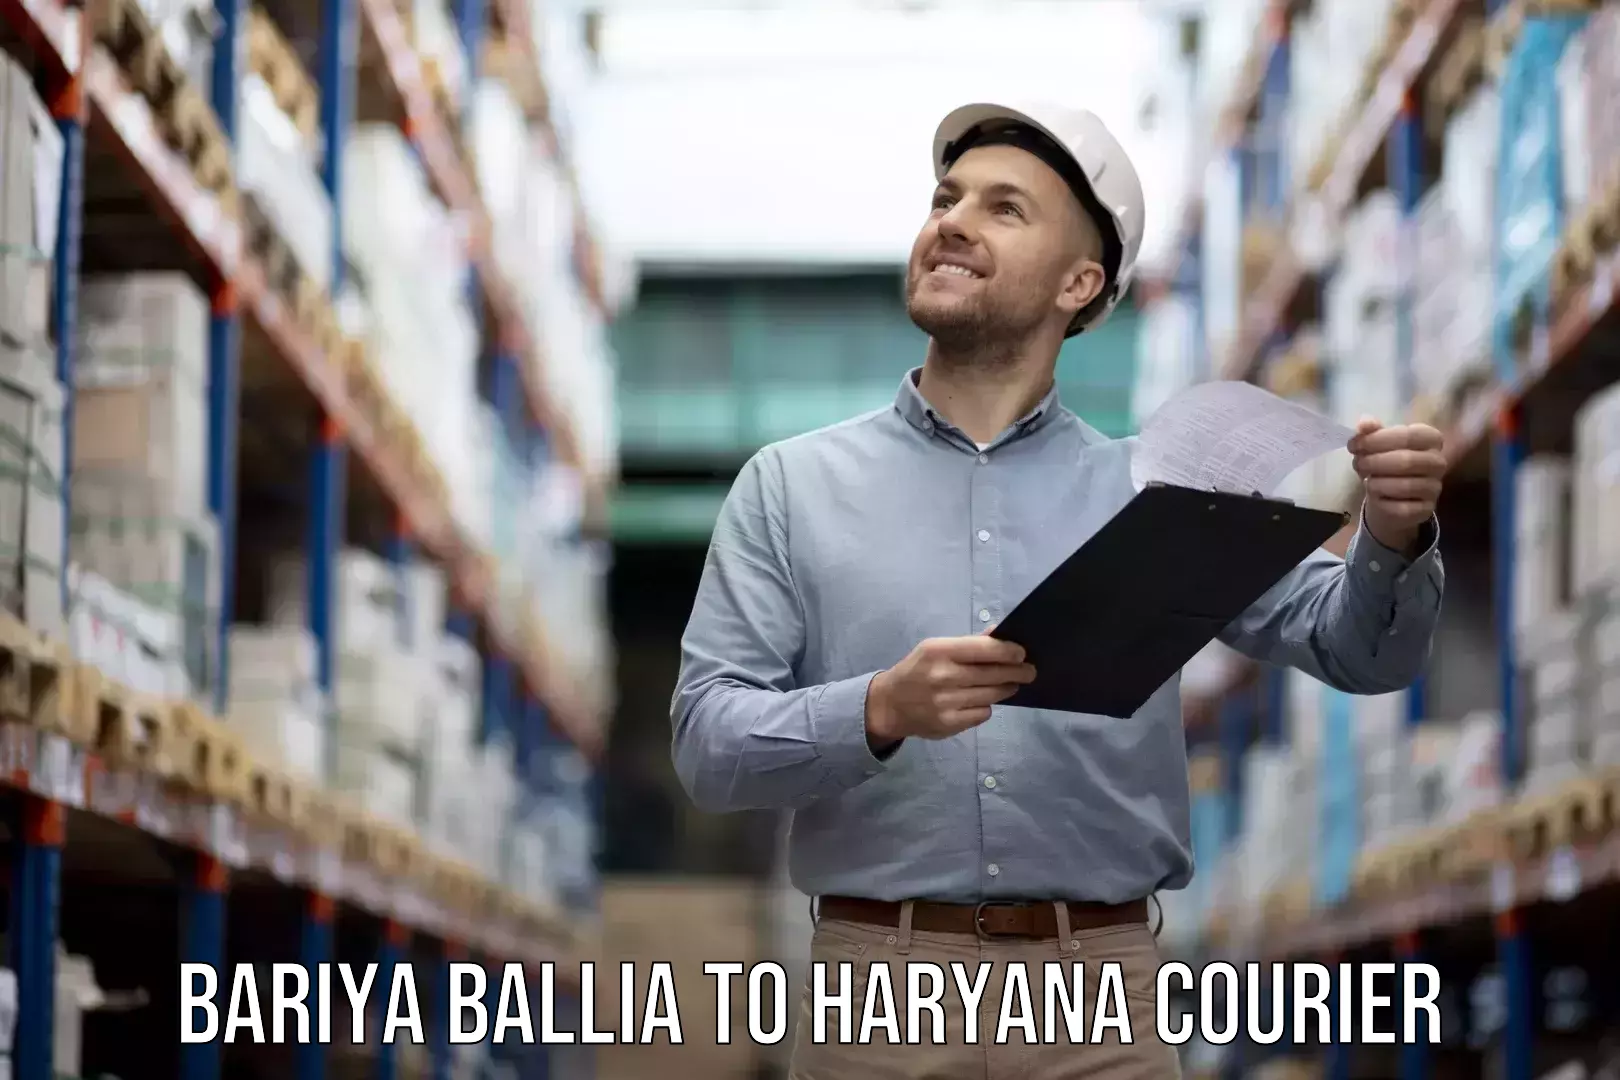 Expert packing and moving Bariya Ballia to Chaudhary Charan Singh Haryana Agricultural University Hisar